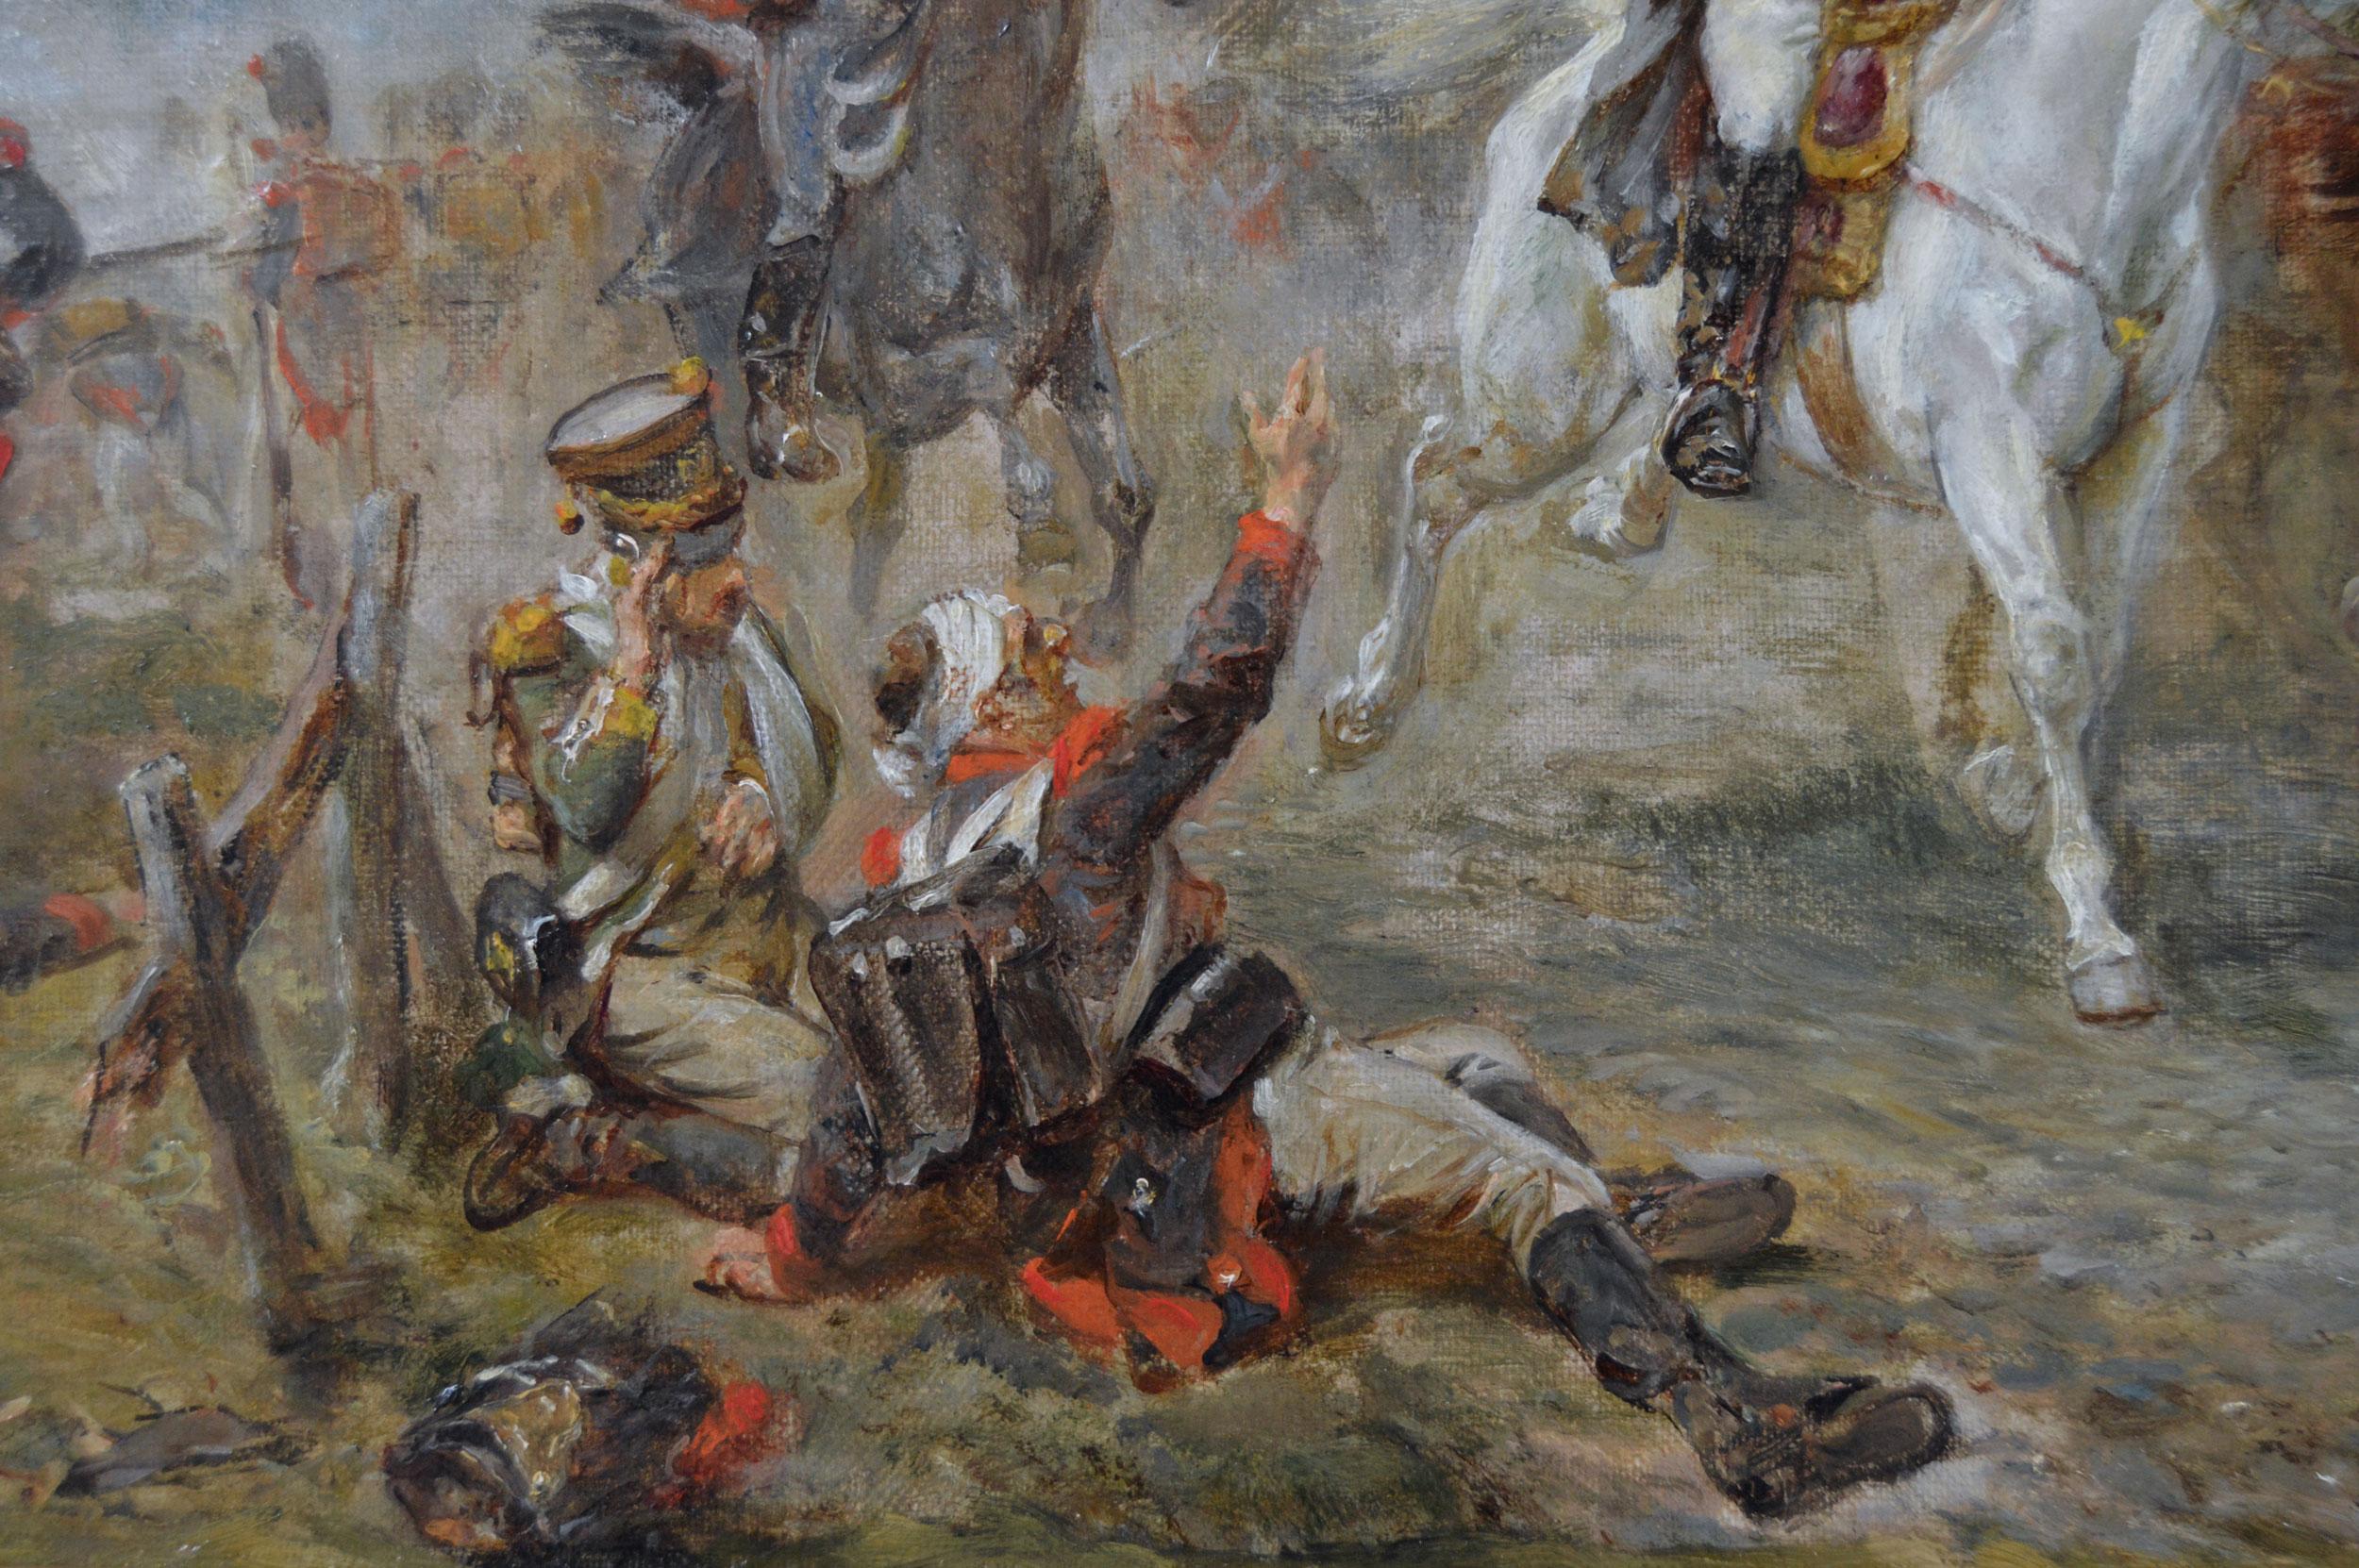 Peinture à l'huile de genre historique du 19e siècle représentant la retraite de Napoléon à Waterloo 1